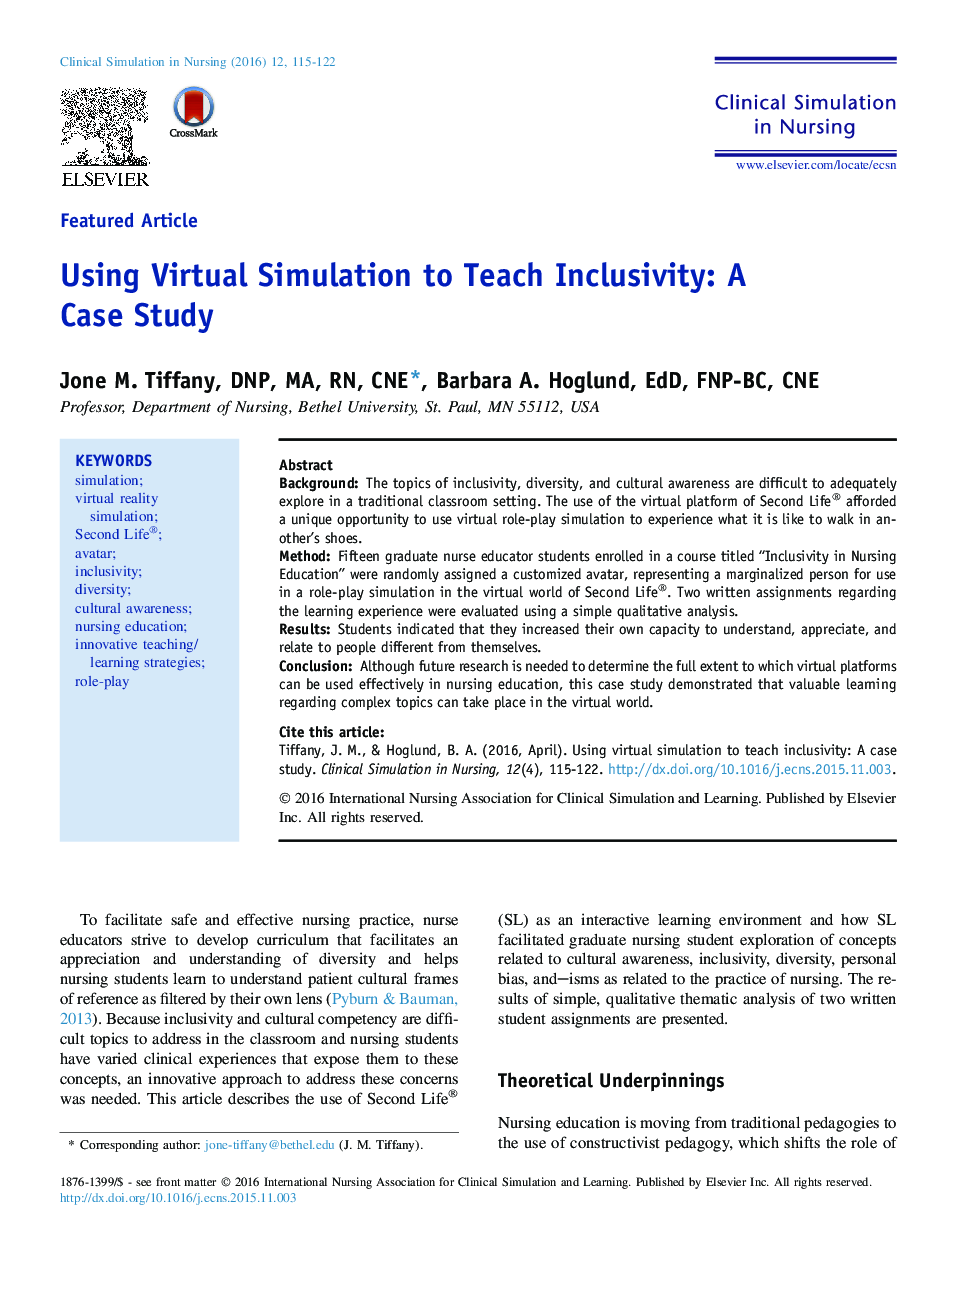 استفاده از شبیه سازی مجازی برای آموزش فراگیر: مطالعه موردی